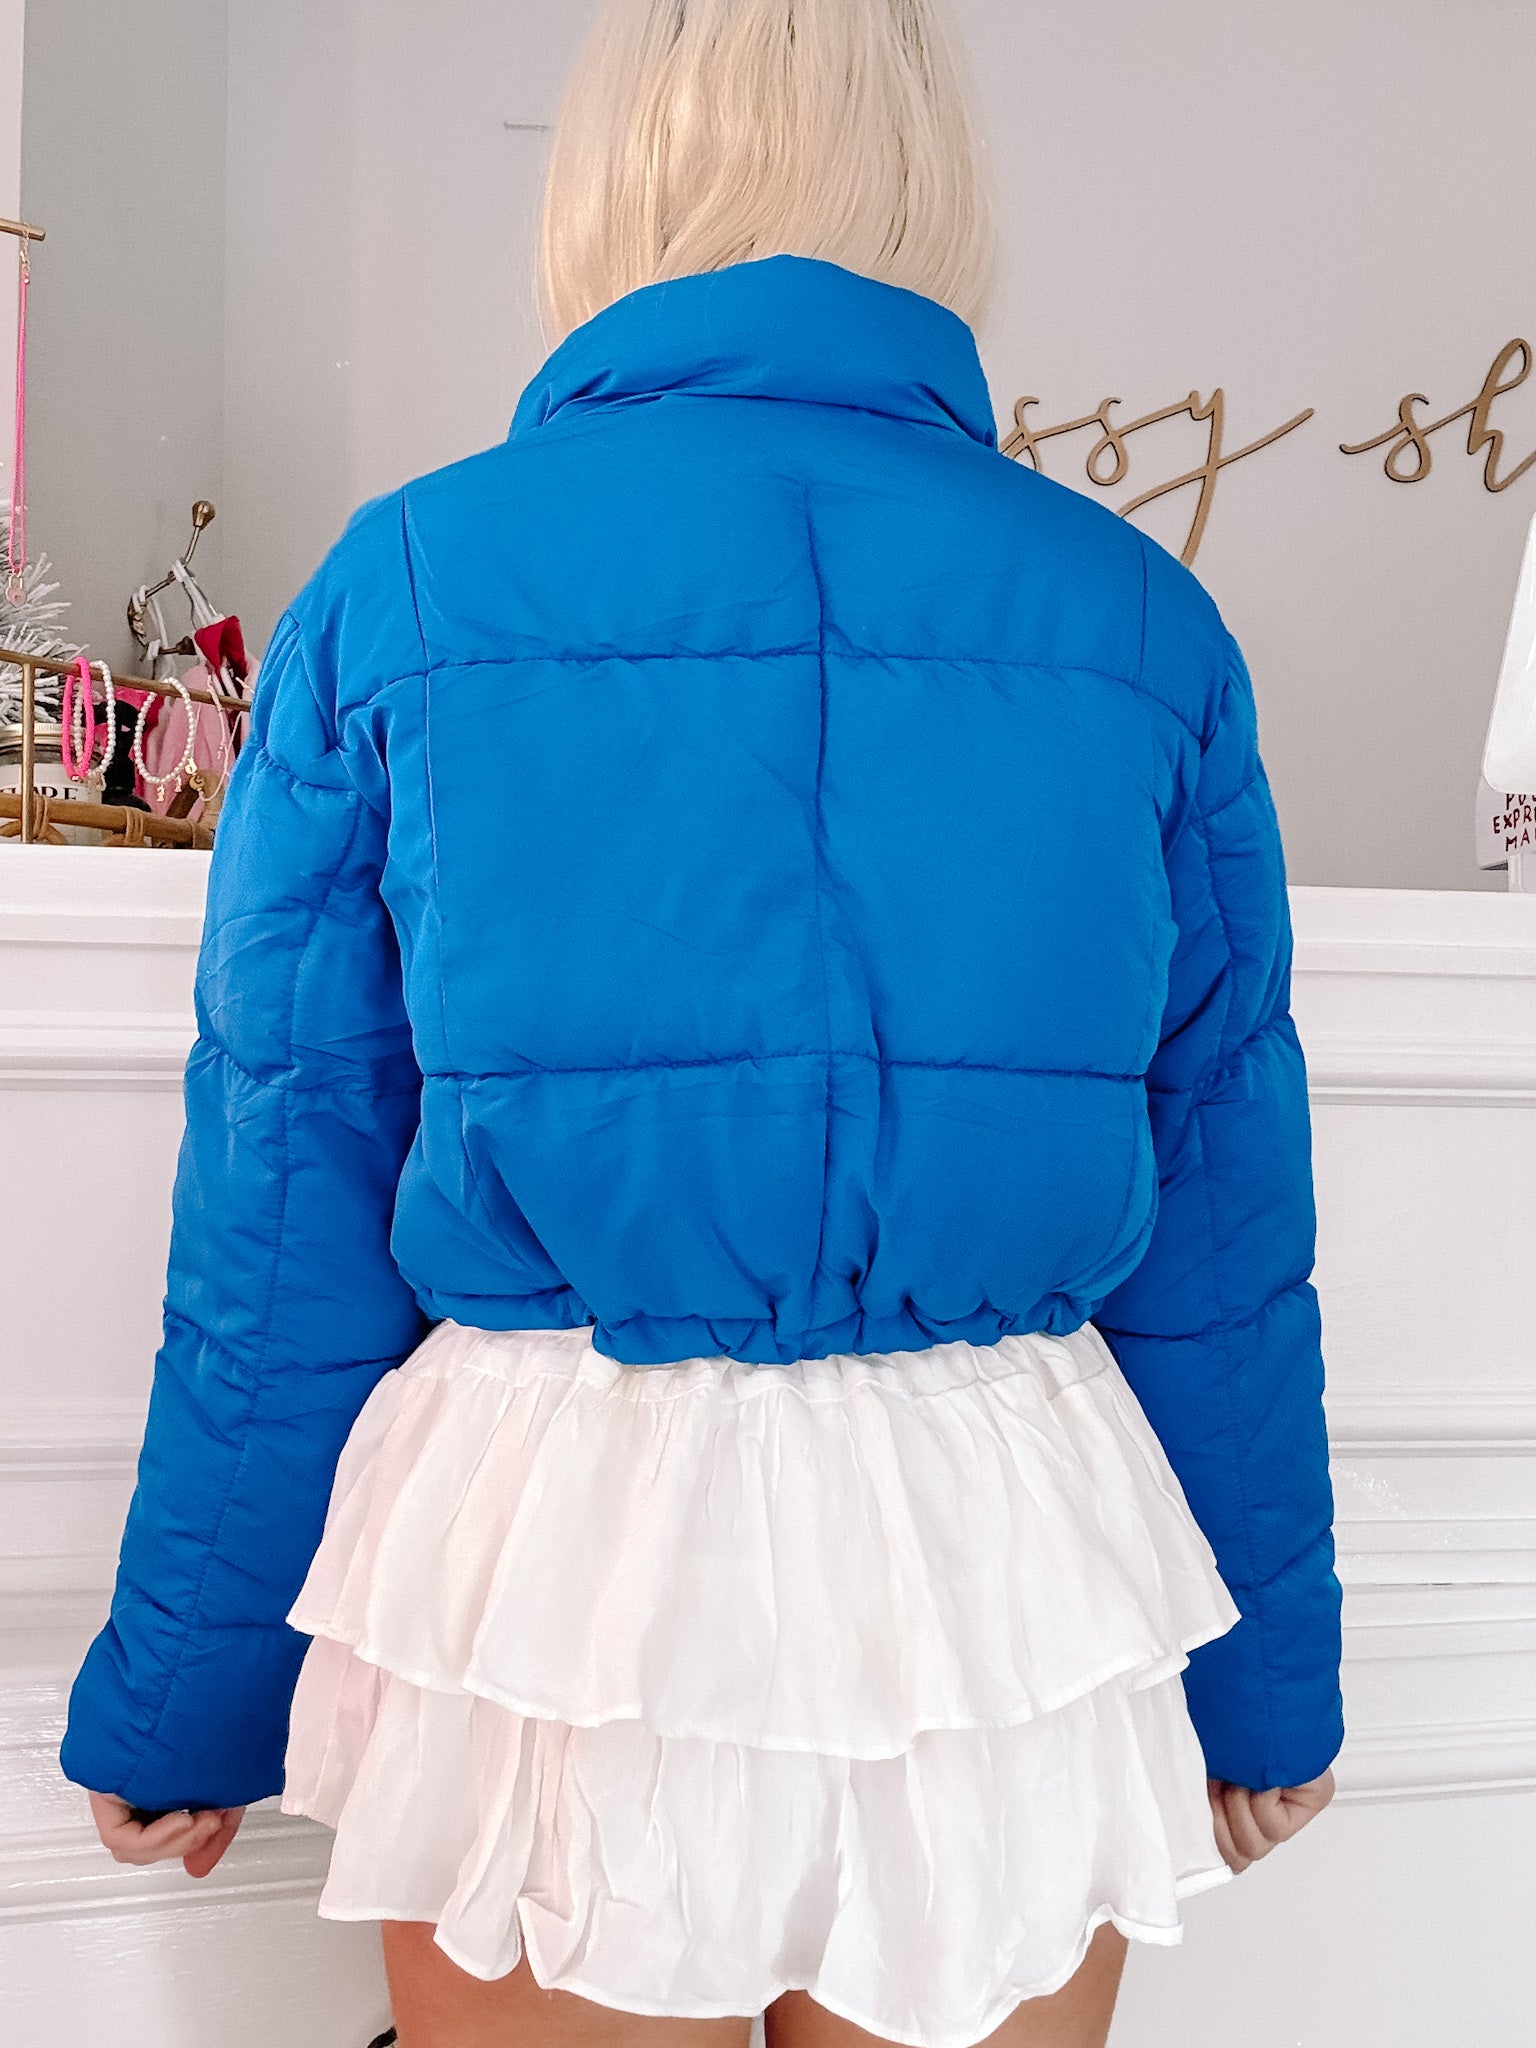 Candyland Blue Puffer Jacket | sassyshortcake.com | Sassy Shortcake Boutique